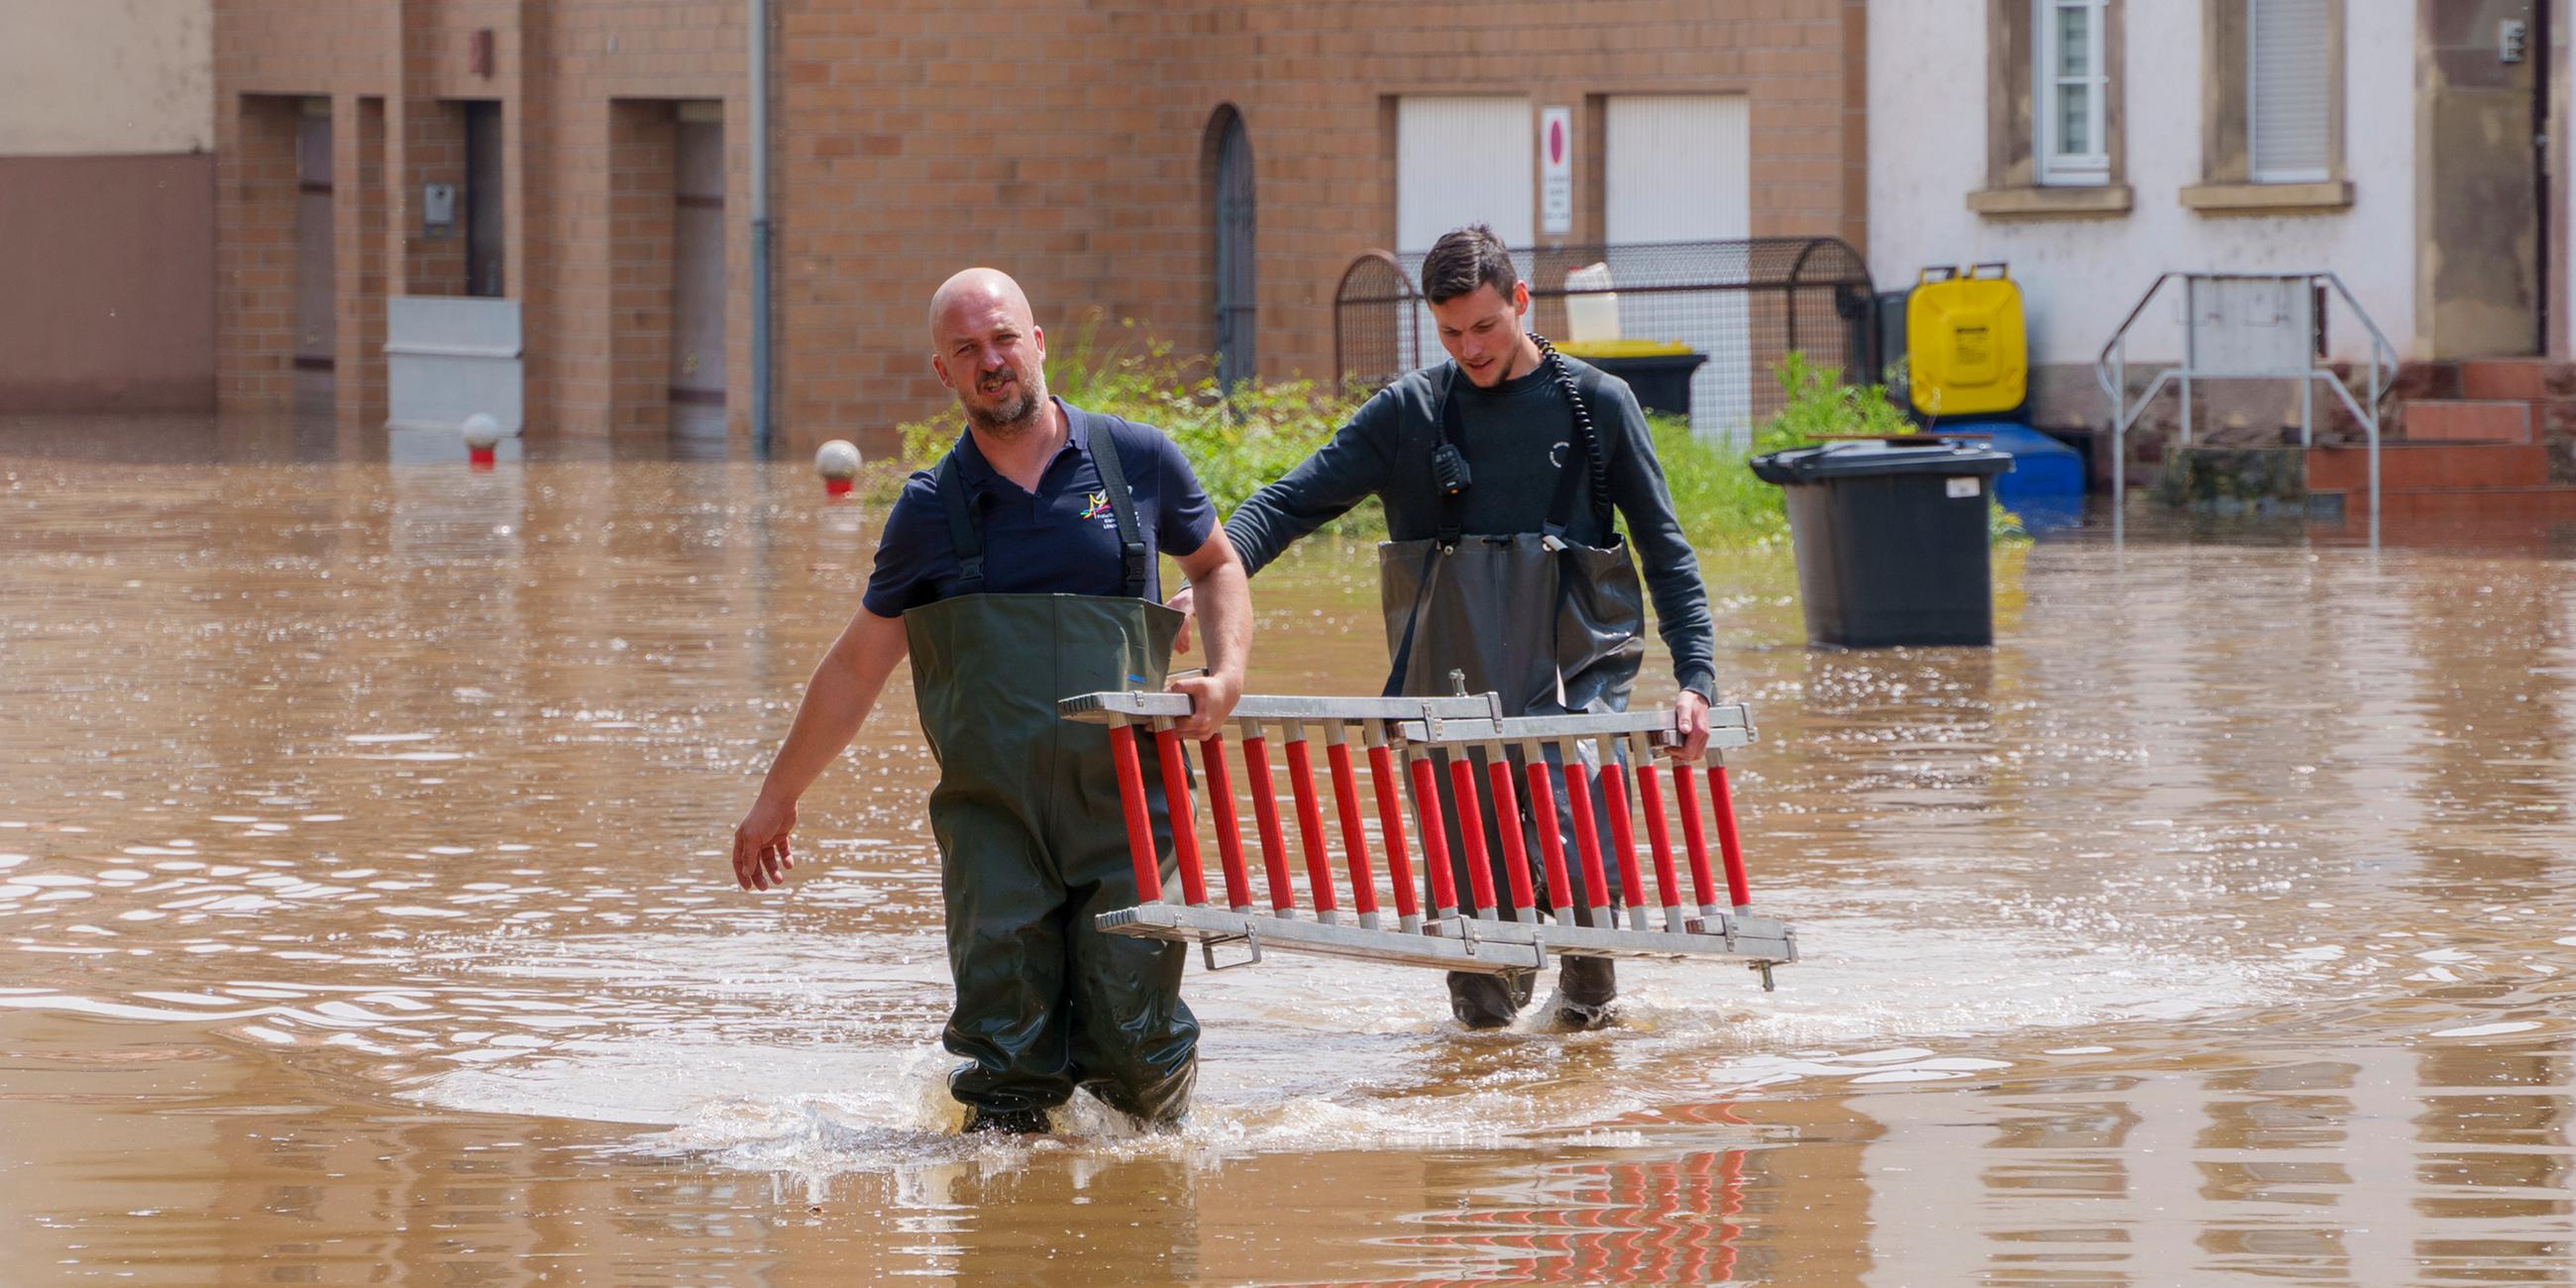 Einsatzkräfte der Freiwilligen Feuerwehr gehen mit einer Leiter durch eine überschwemmte Straße in Kleinblittersdorf im Saarland.